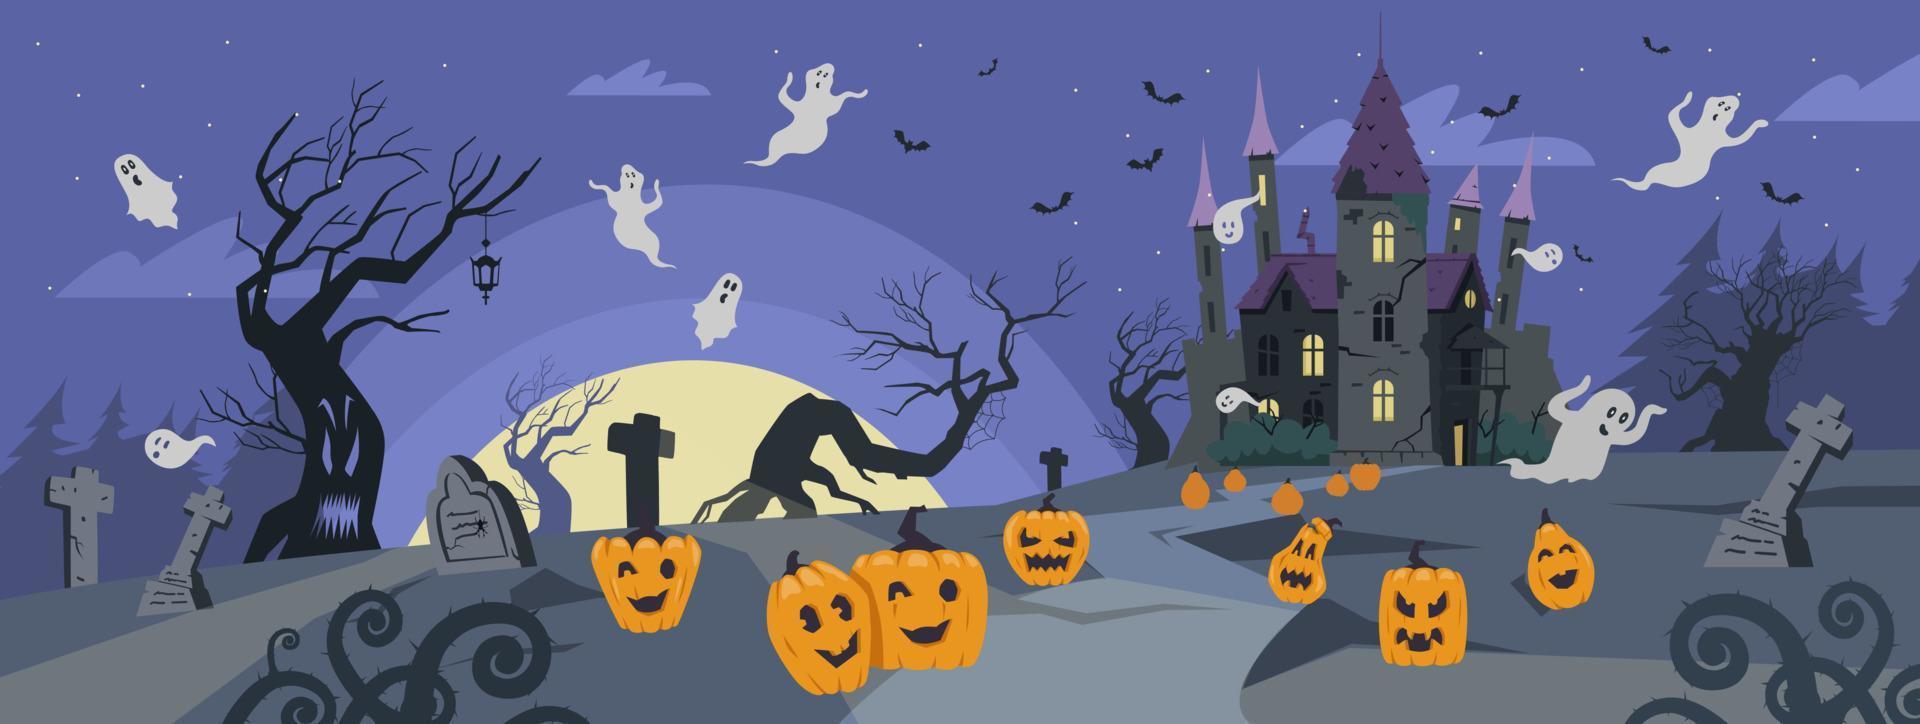 illustration vectorielle de fond halloween. paysage effrayant avec vieux château, cimetière, arbres fantasmagoriques, fantômes et citrouilles. vecteur